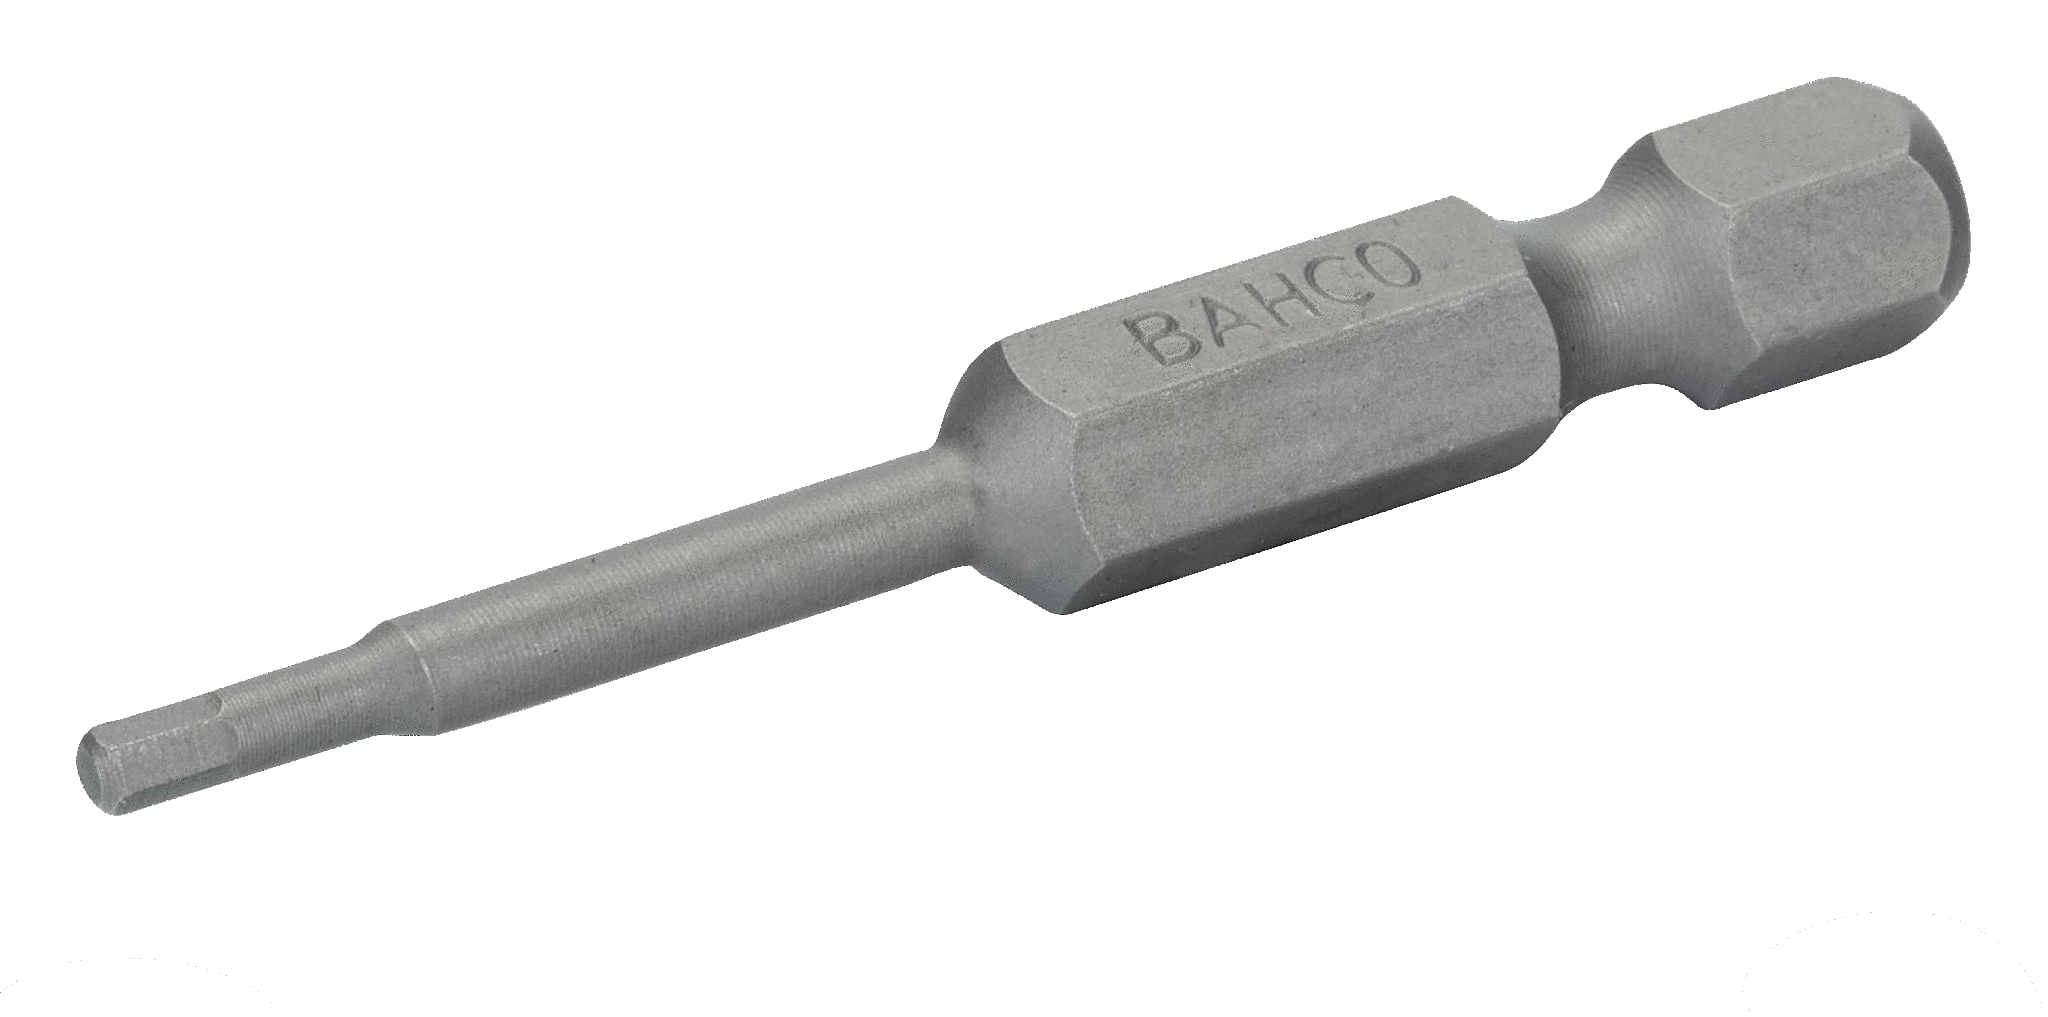 картинка Стандартные биты для отверток под винты с шестигранной головкой, метрические размеры, 50 мм BAHCO 59S/50H8-2P от магазина "Элит-инструмент"